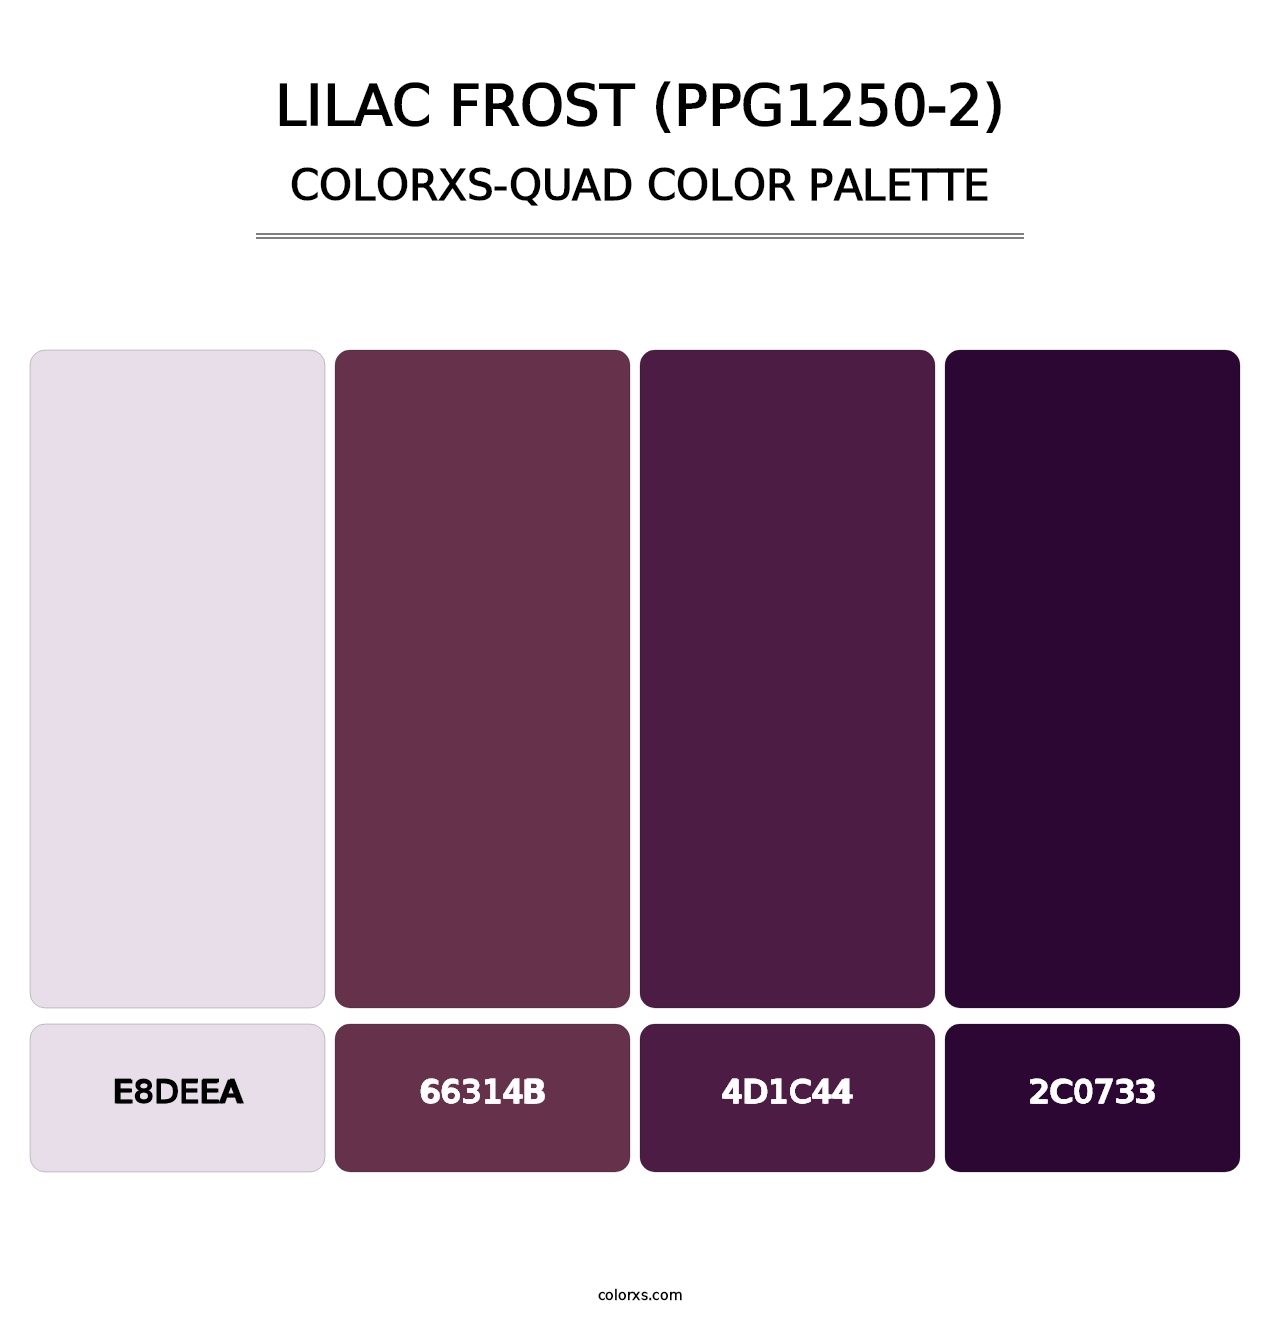 Lilac Frost (PPG1250-2) - Colorxs Quad Palette